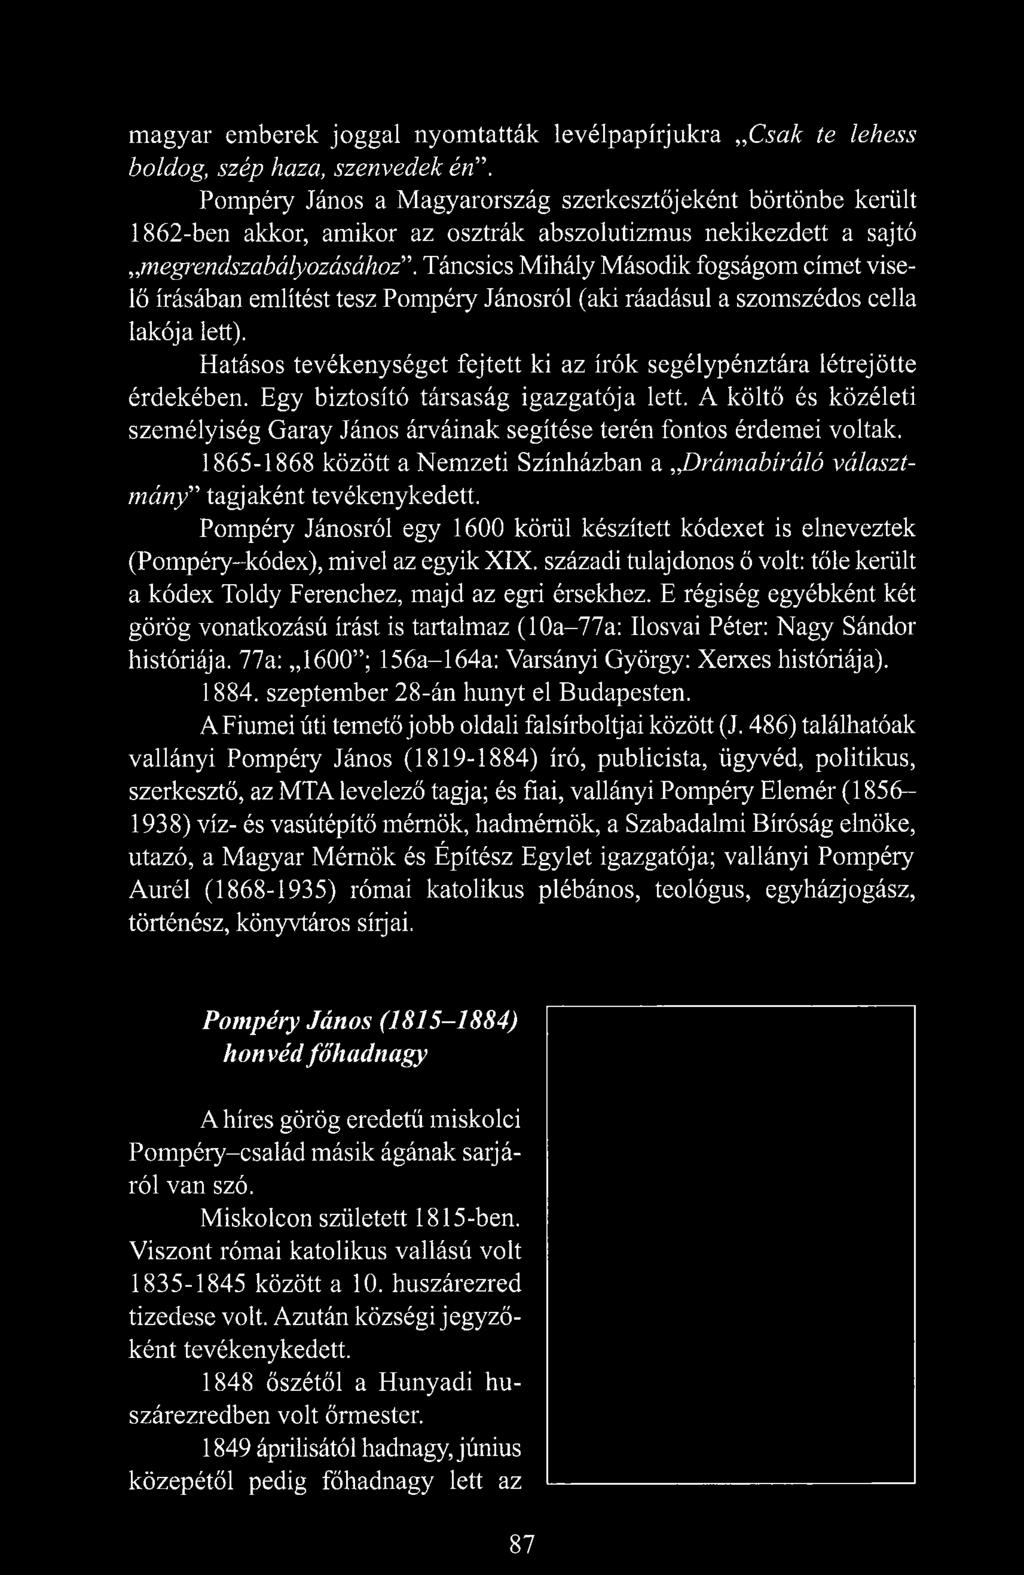 Táncsics Mihály Második fogságom címet viselő írásában említést tesz Pompéry Jánosról (aki ráadásul a szomszédos cella lakója lett).